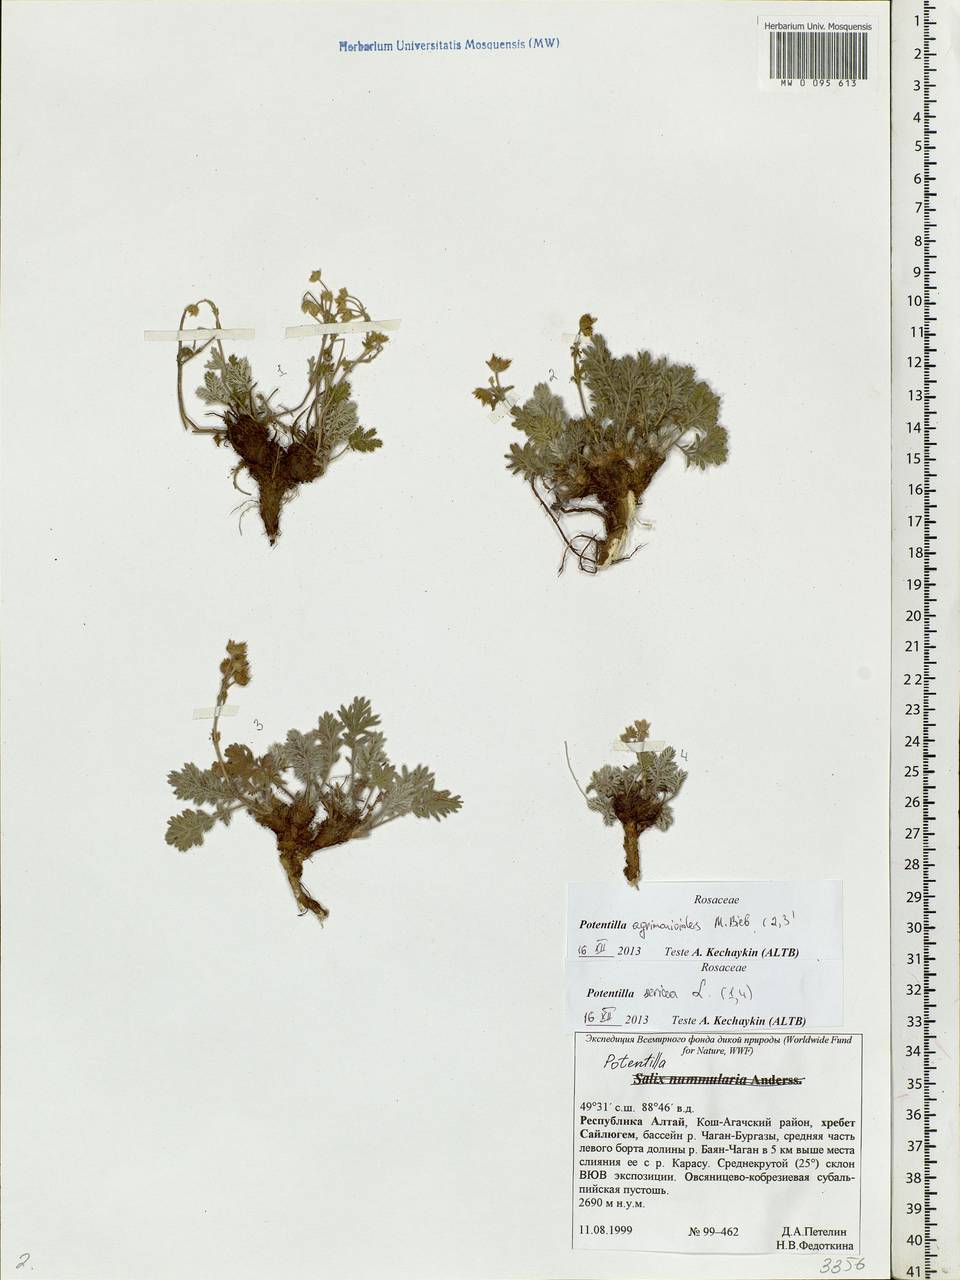 Potentilla agrimonioides M. Bieb., Siberia, Altai & Sayany Mountains (S2) (Russia)